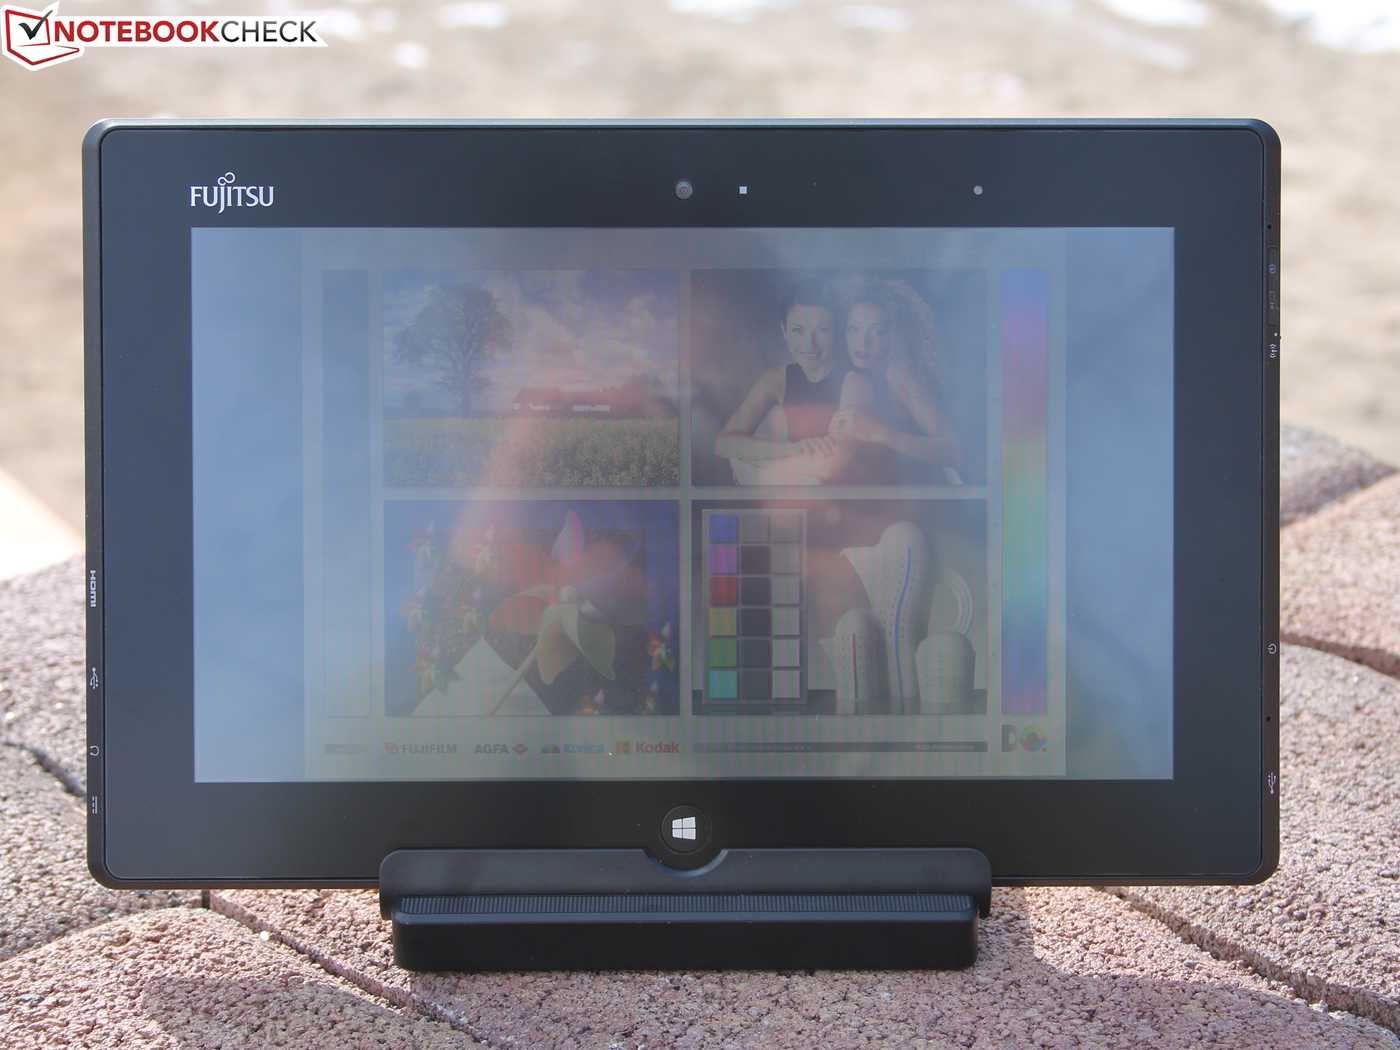 Fujitsu stylistic q572 256gb win8 amd z-60 купить по акционной цене , отзывы и обзоры.